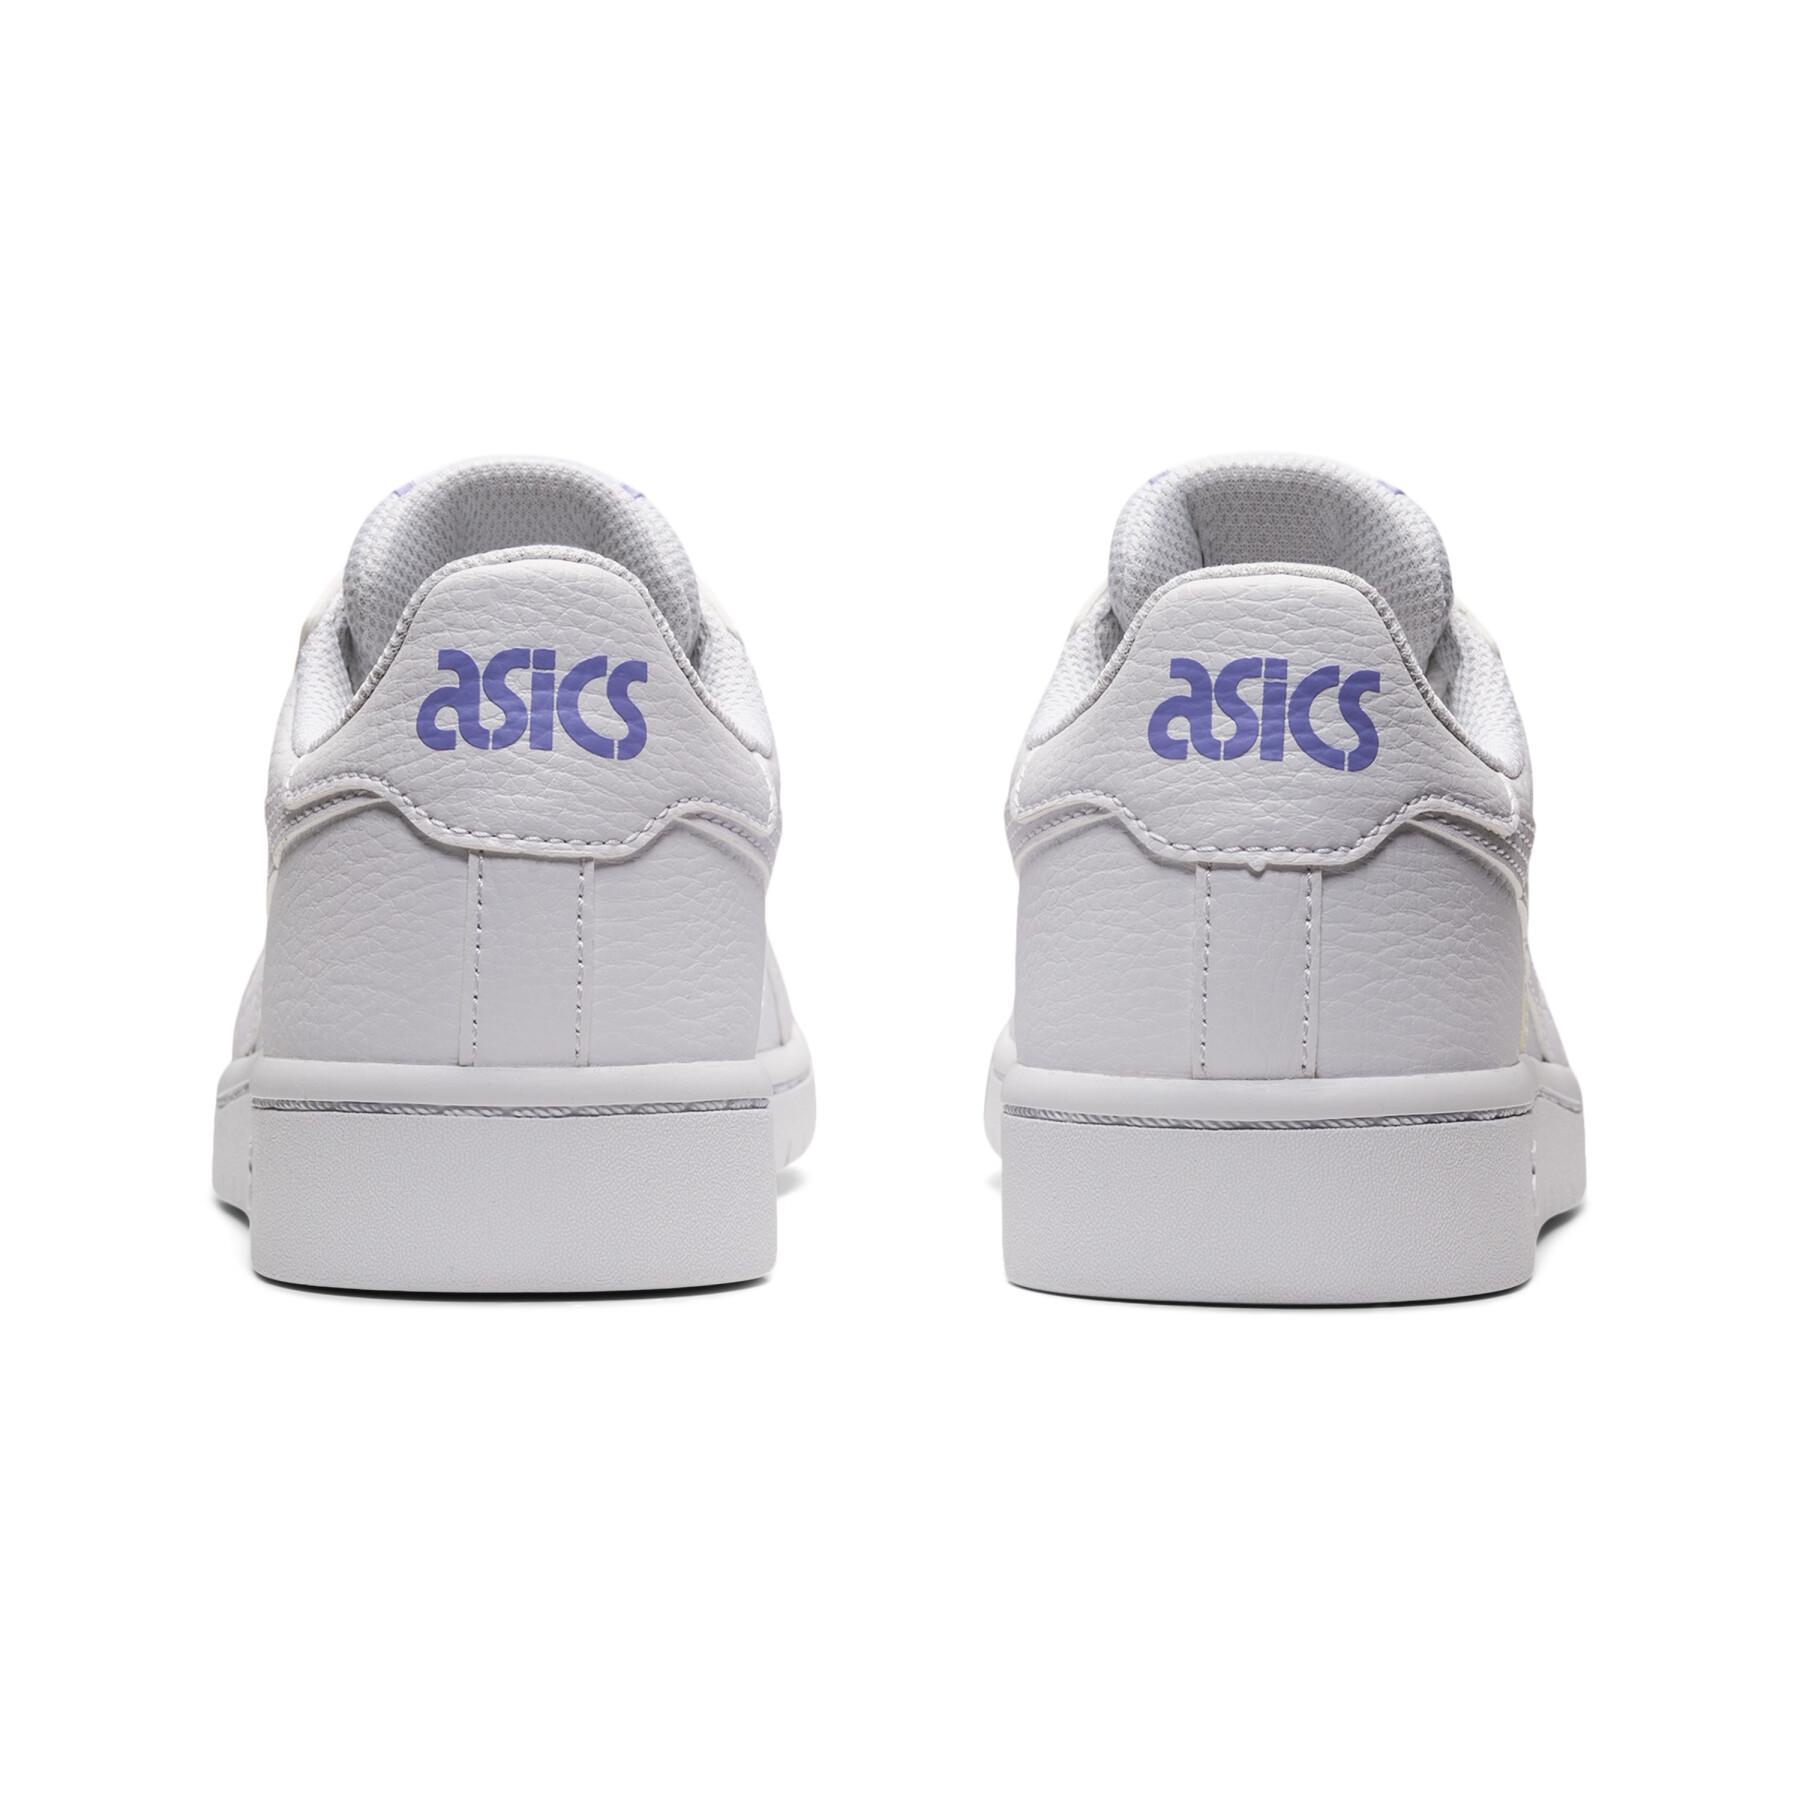 Skor för barn Asics Japan S Gs